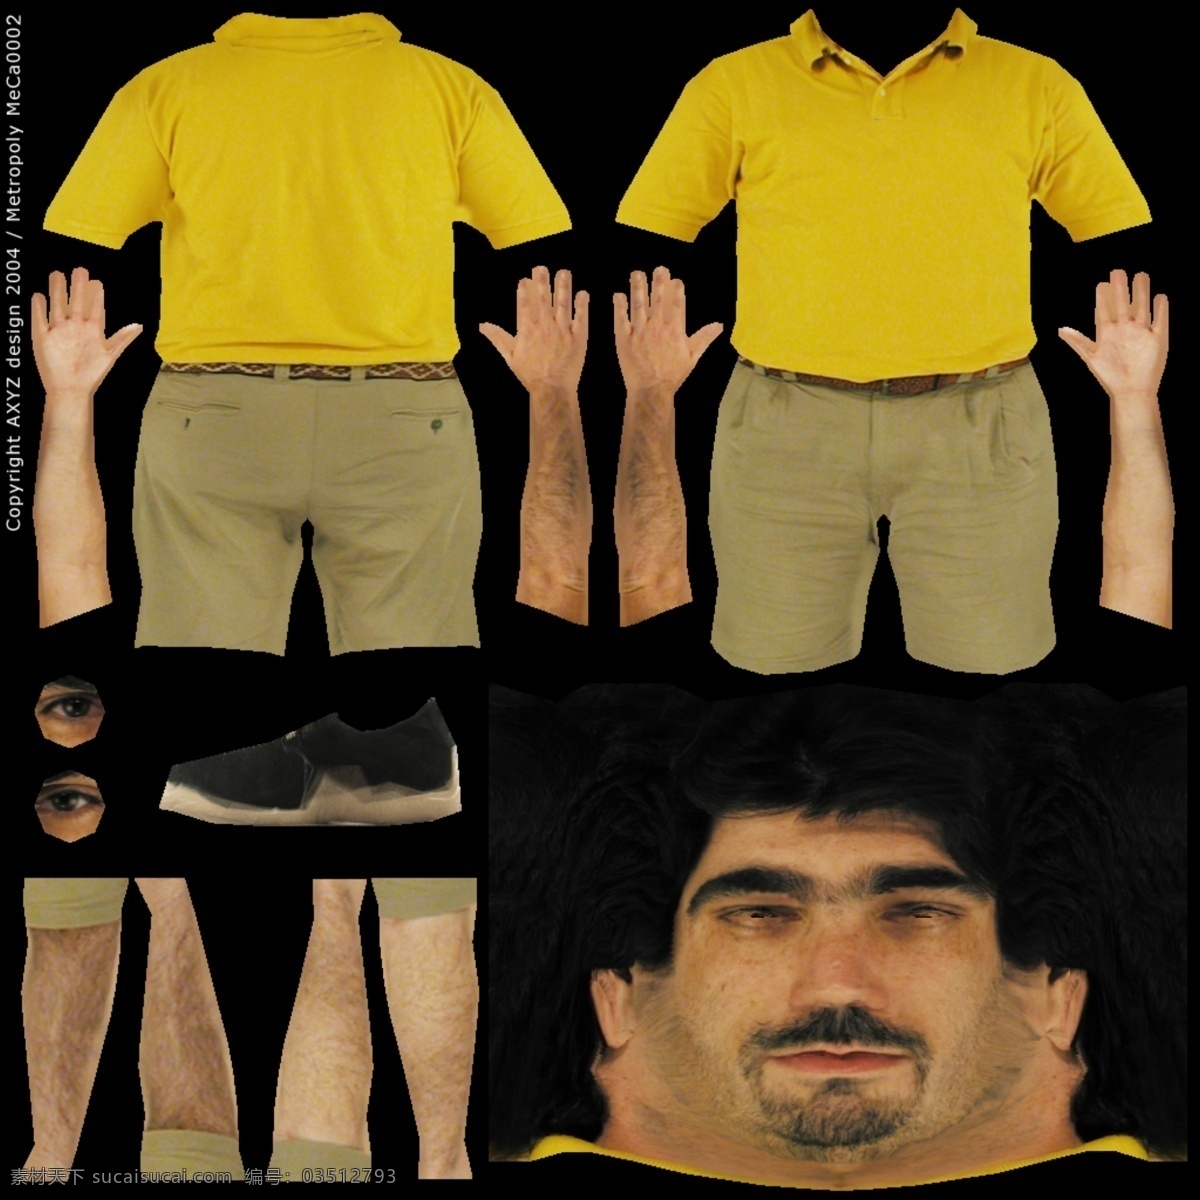 人物 男性 3d 模型 人物模型素材 3d人物模型 男人模型素材 3d人体效果 游戏人物模型 3d模型素材 其他3d模型